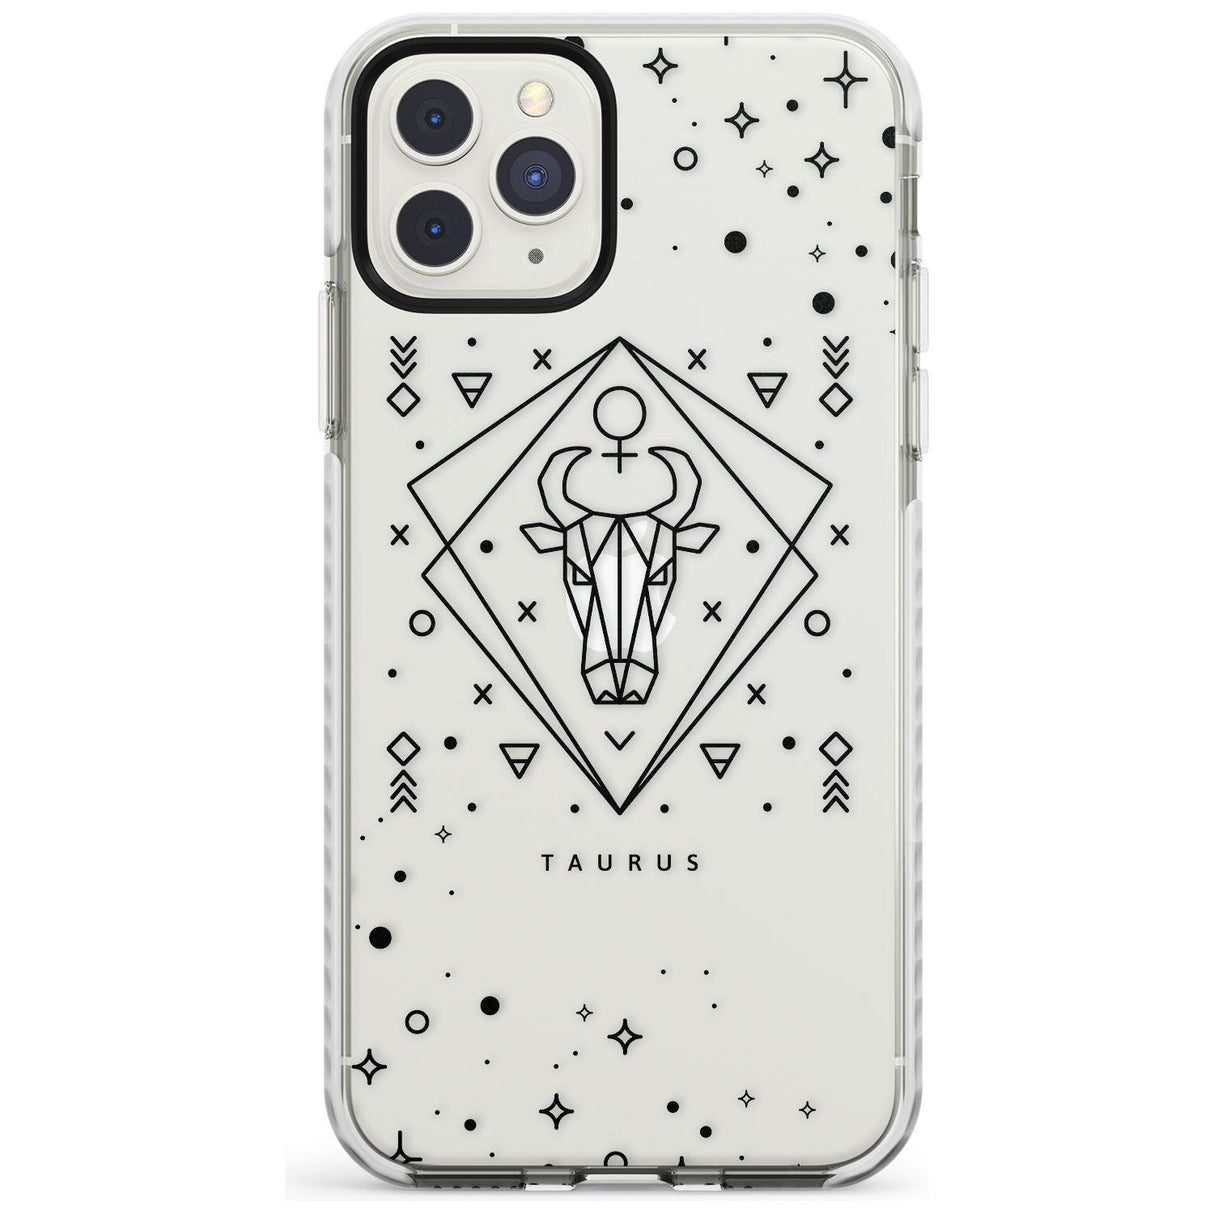 Taurus Emblem - Transparent Design Impact Phone Case for iPhone 11 Pro Max